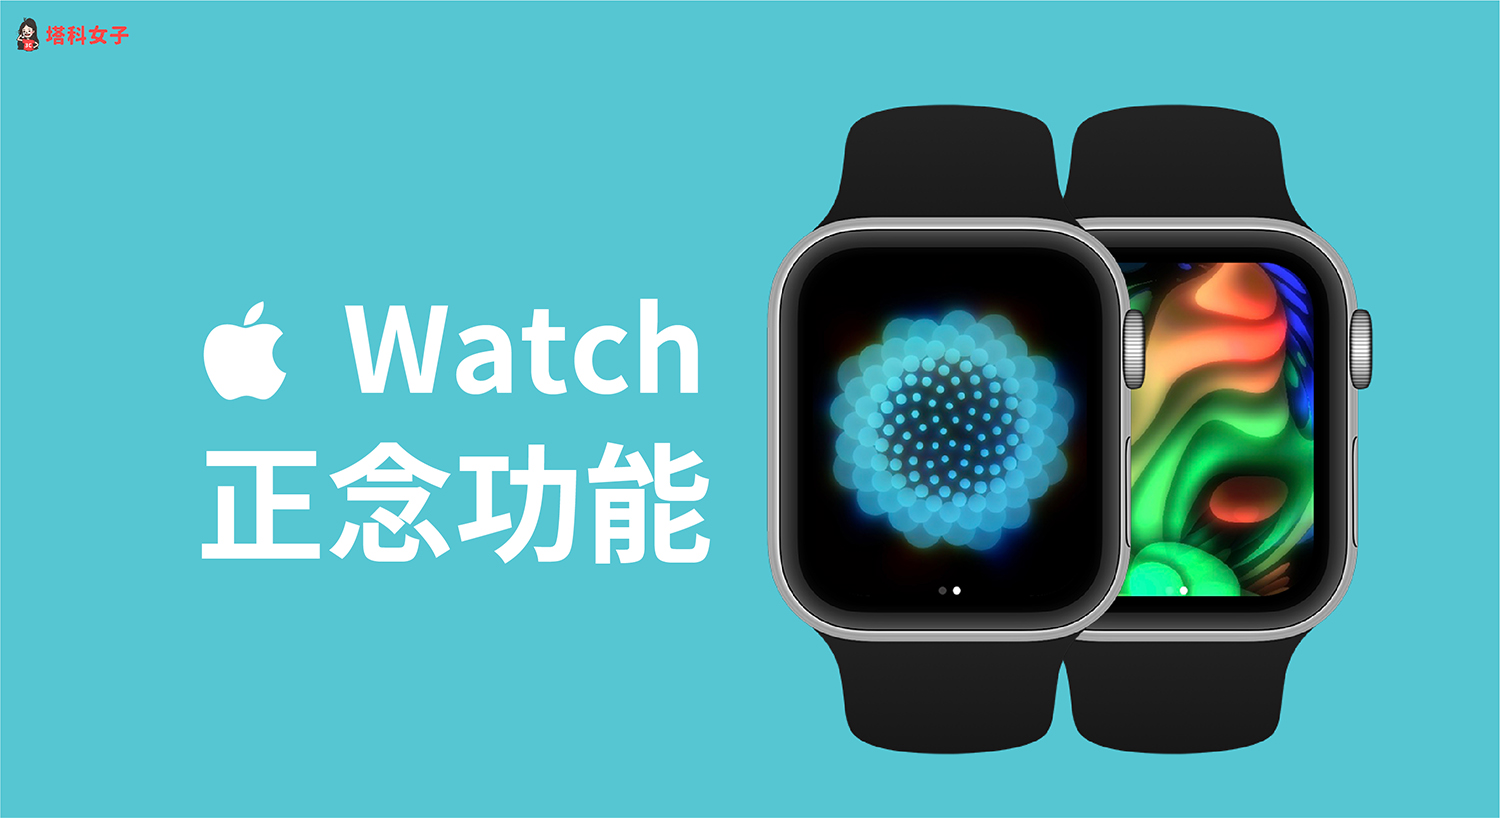 Apple Watch 正念 App 提供呼吸练习与反思模式，这篇教你怎么用